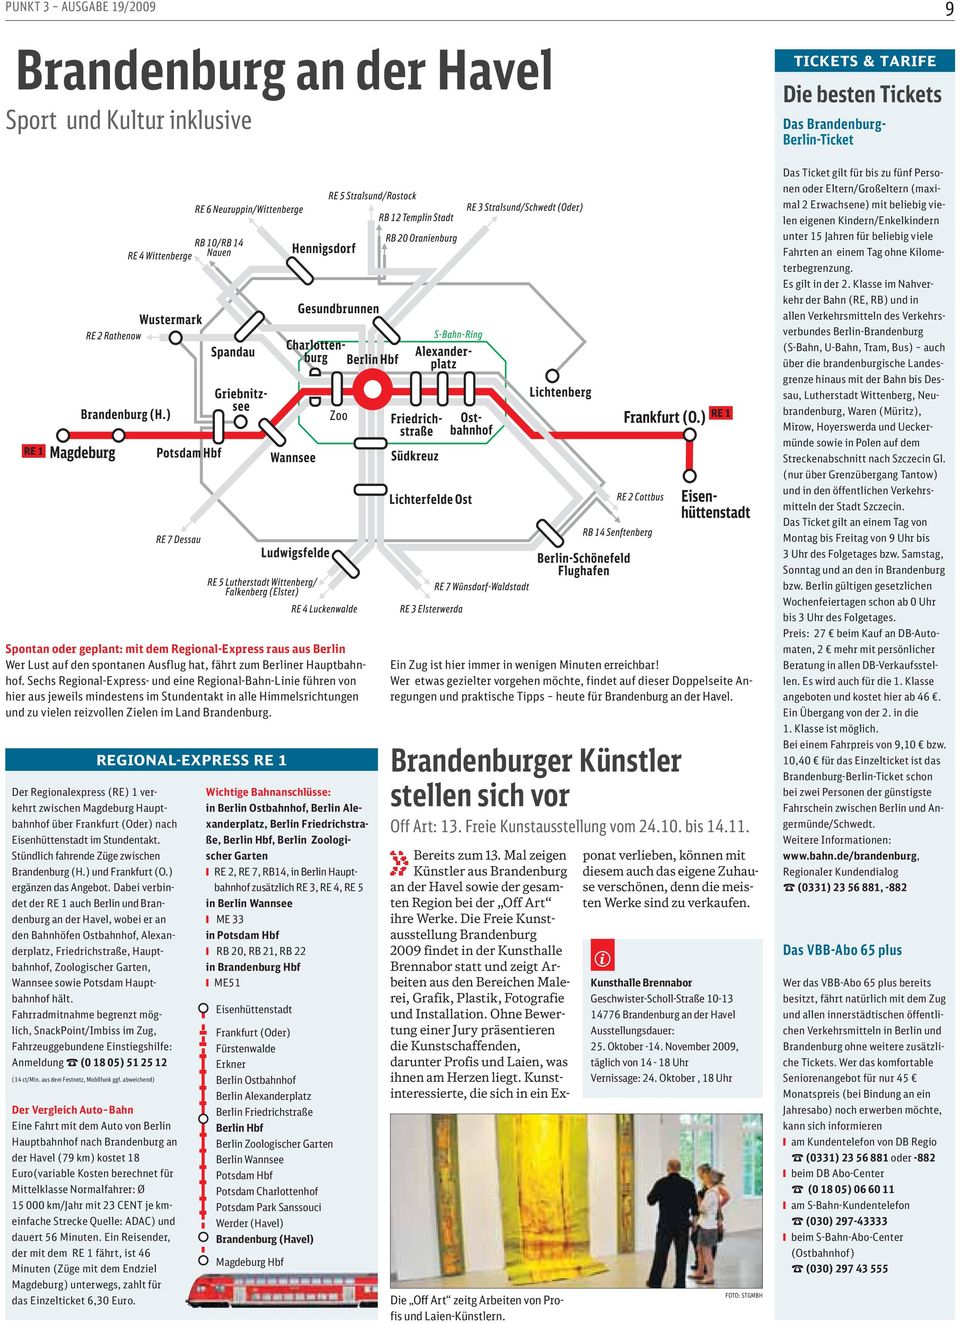 Sechs Regonal-Express- und ene Regonal-Bahn-Lne führen von her aus jewels mndestens m Stundentakt n alle Hmmelsrchtungen und zu velen rezvollen Zelen m Land Brandenburg.